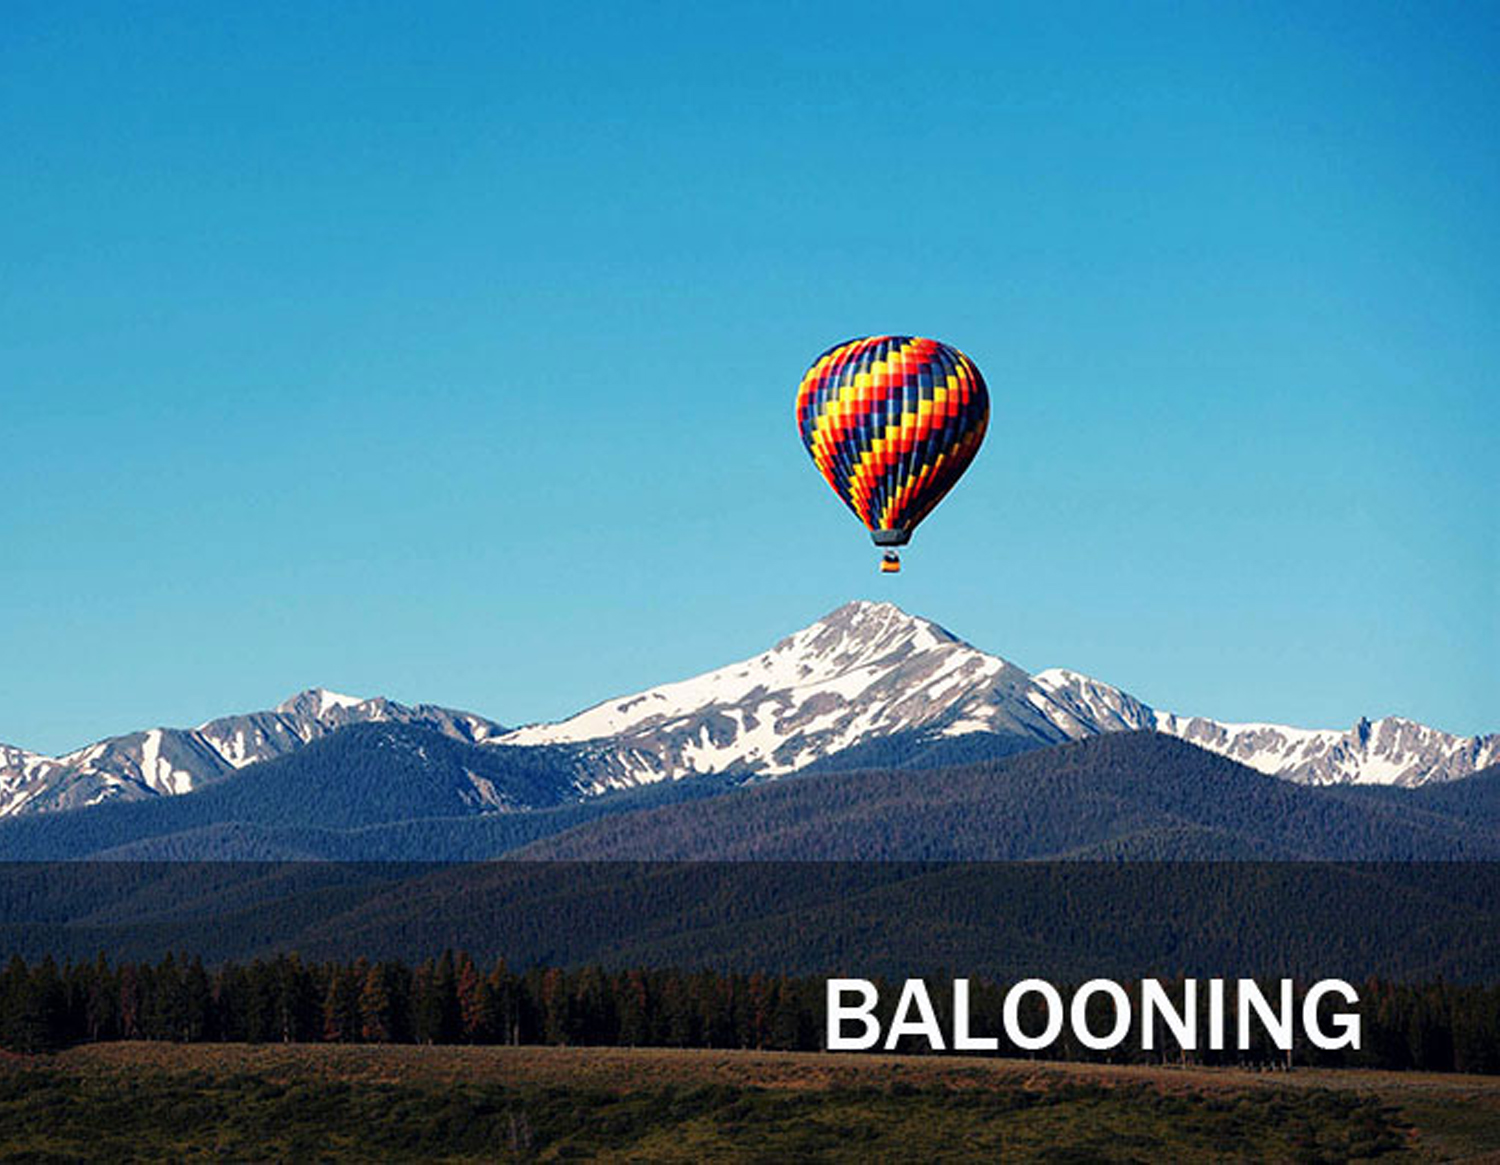 hot air ballooning tours